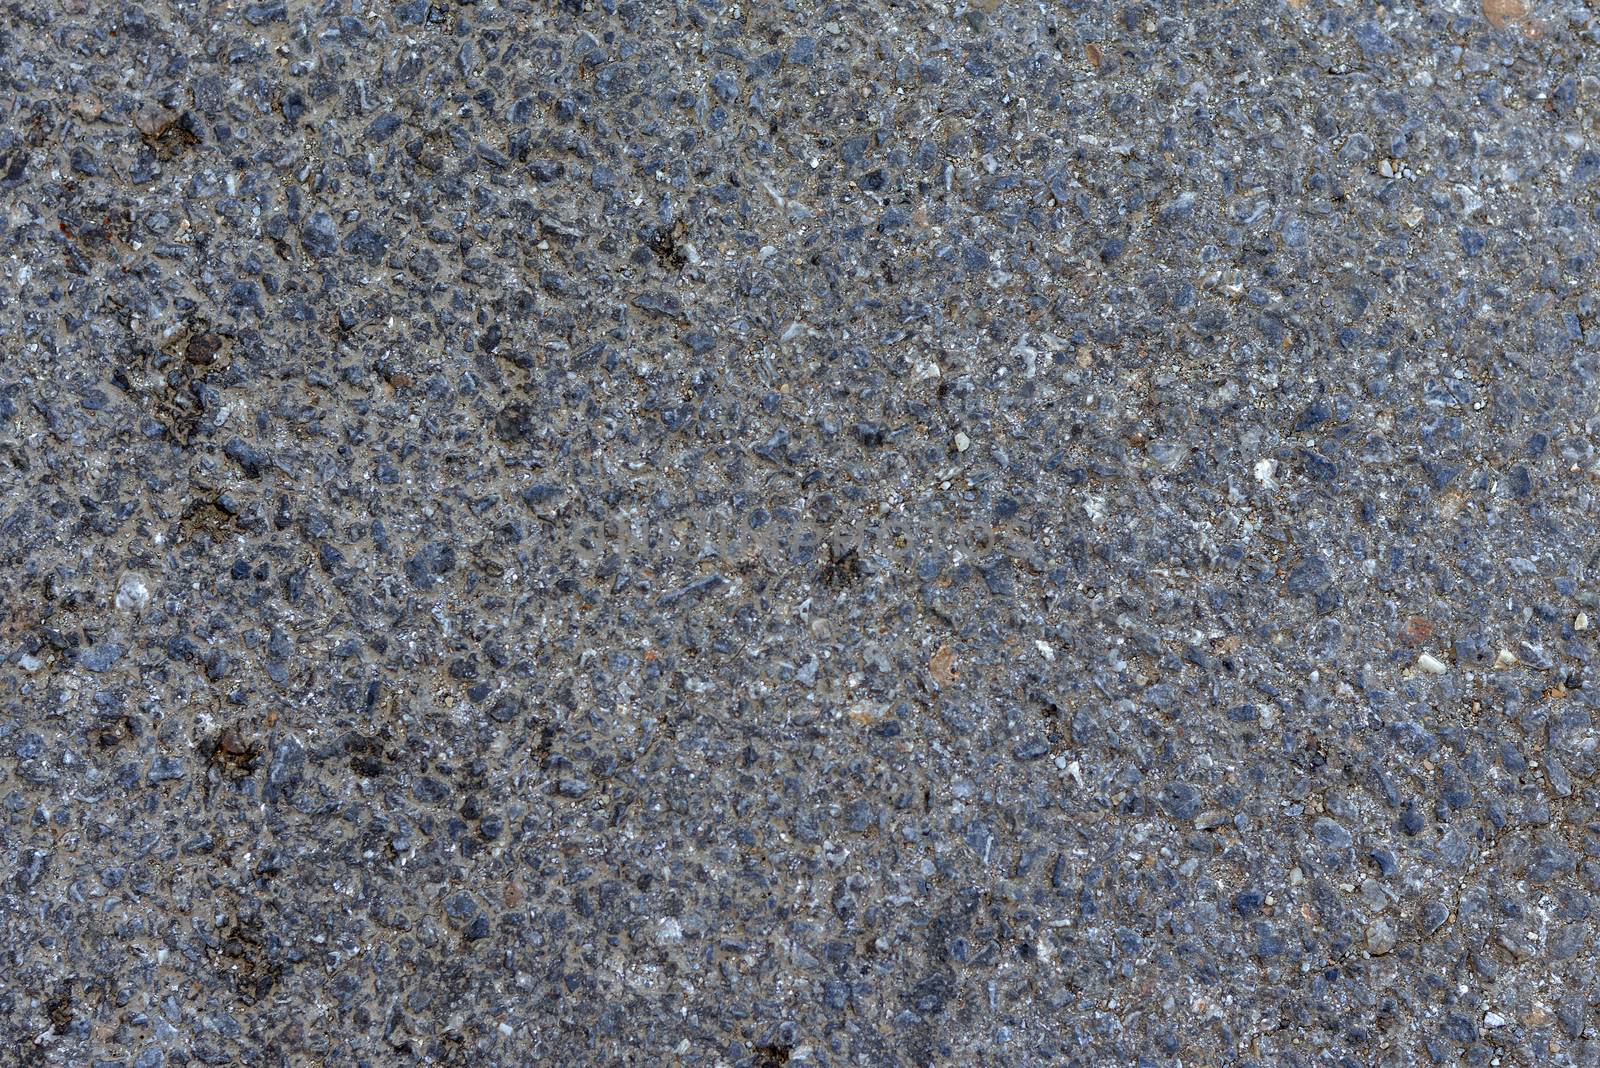 Dark asphalt surface much relief. Close up